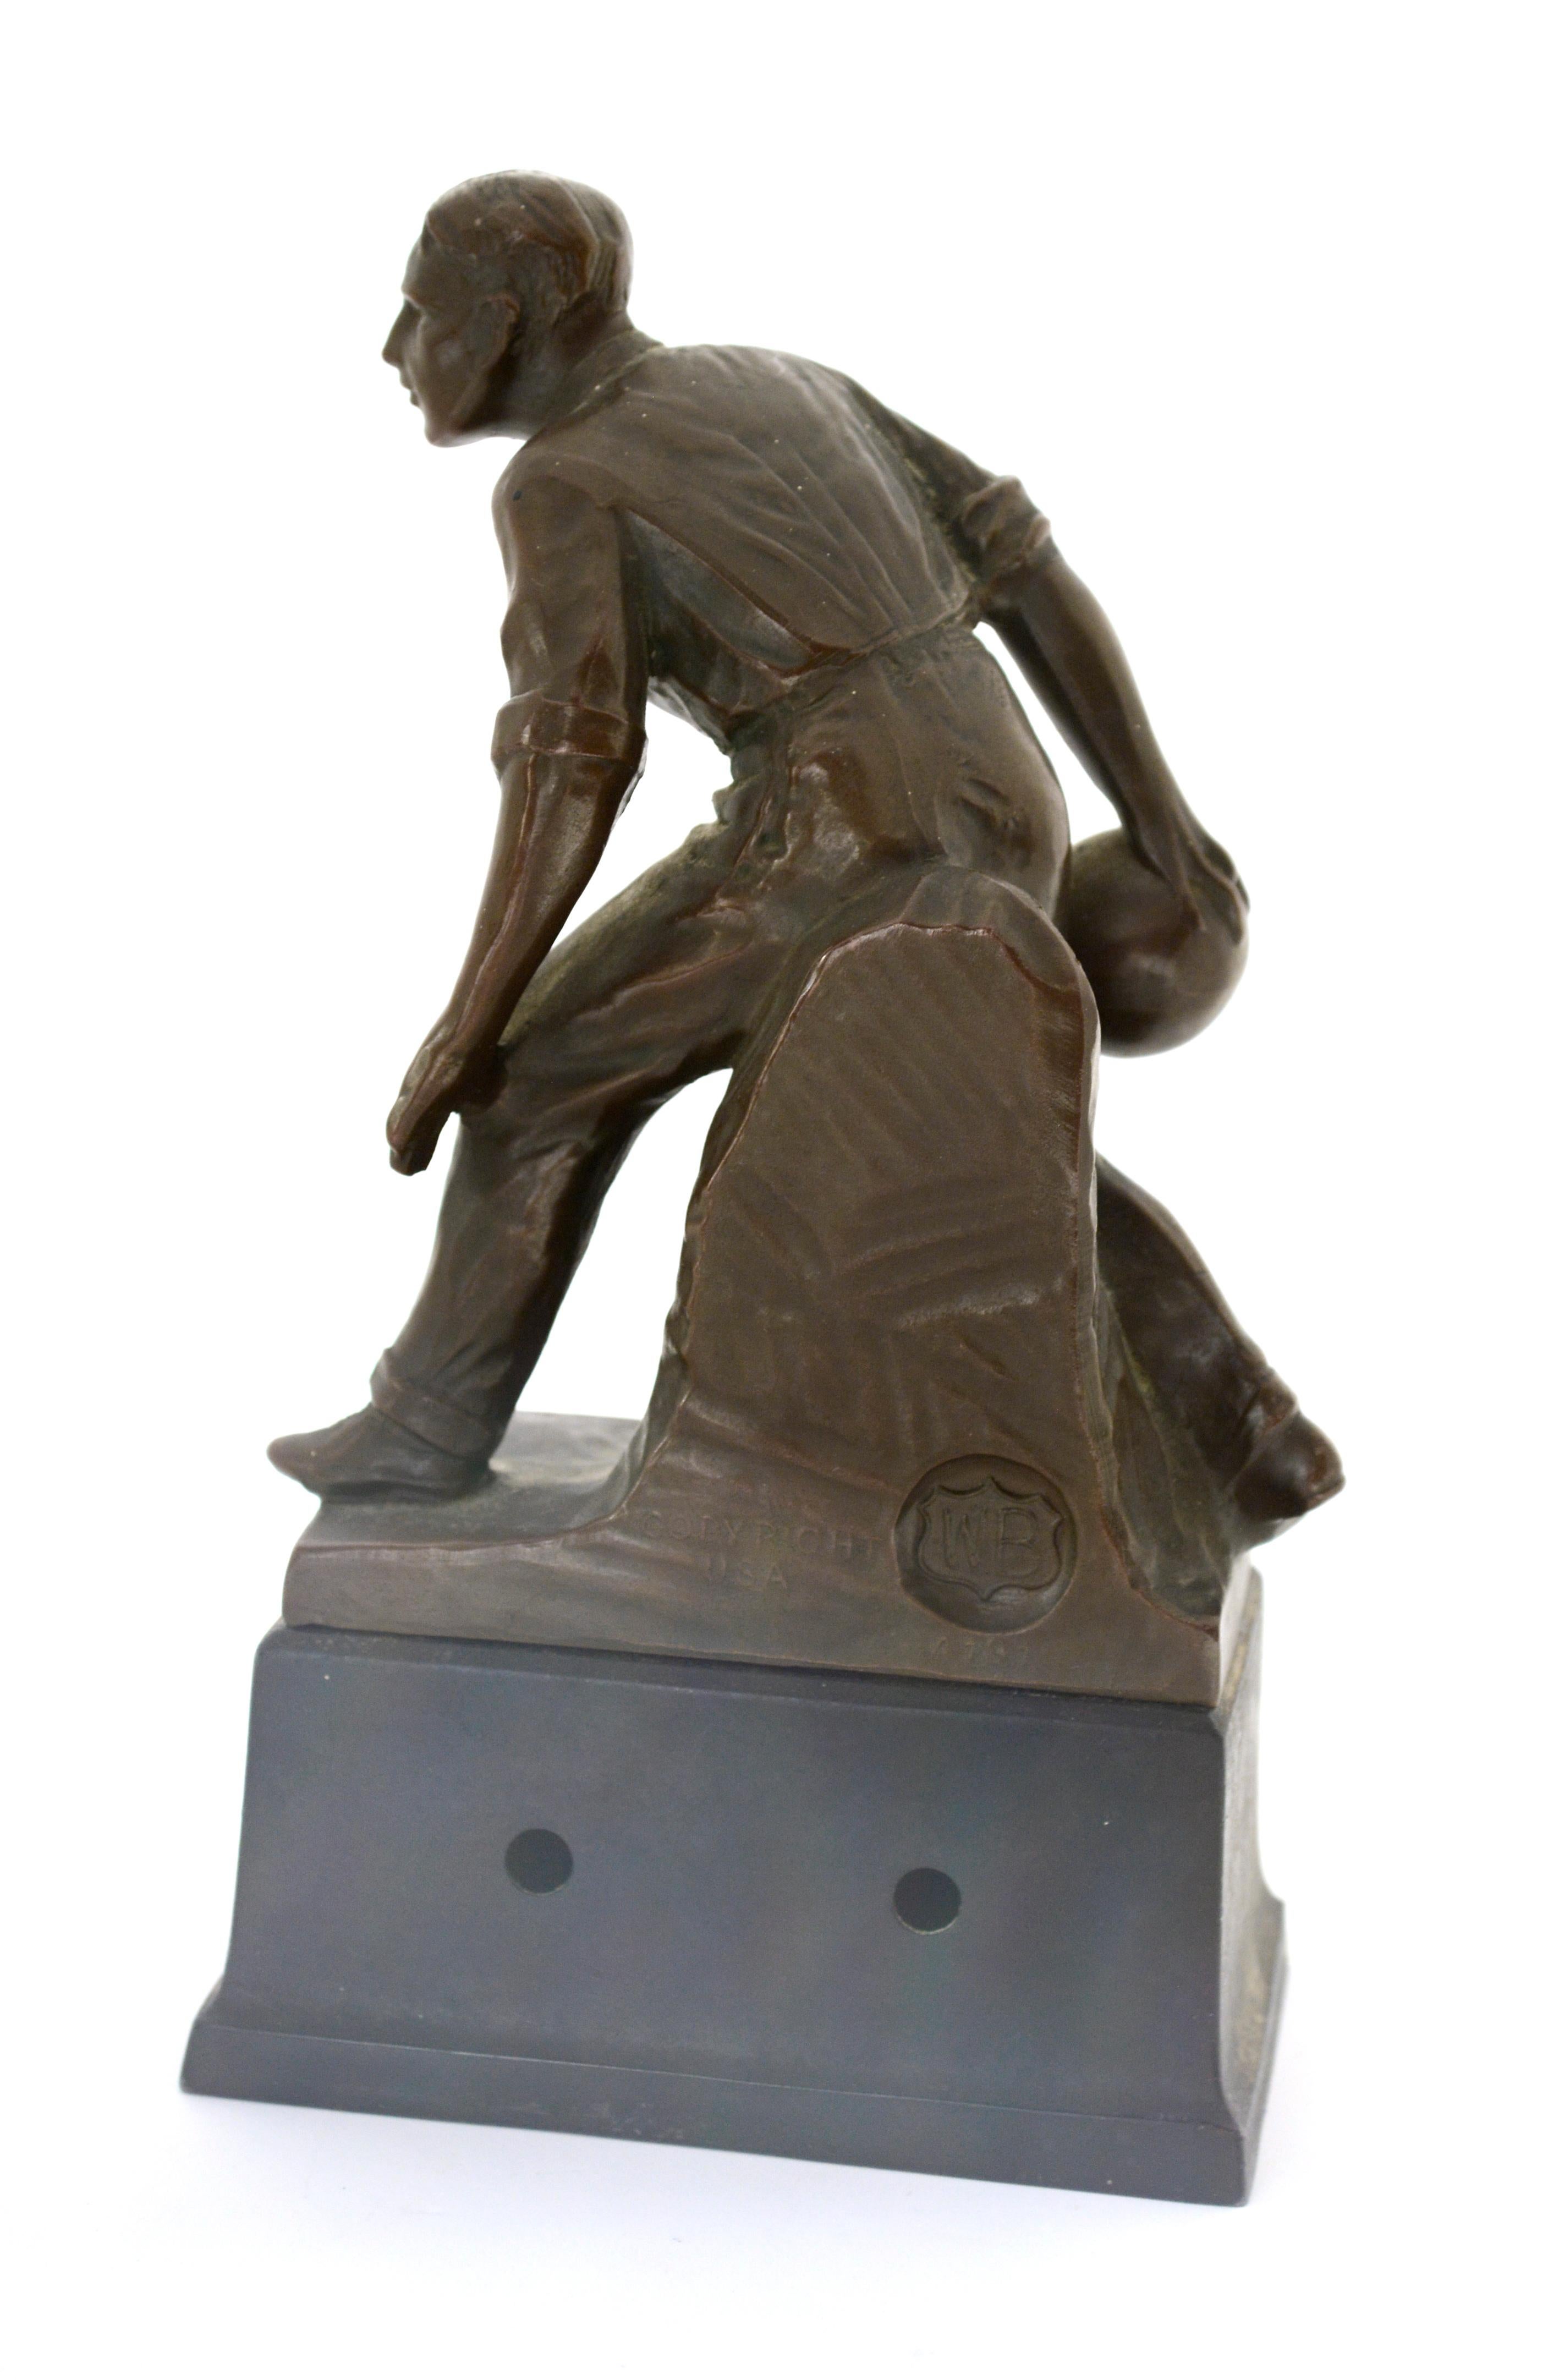 Bronzetrophäe eines Bowlers, hergestellt von Weidlich Bros. Herstellendes Unternehmen. Gekennzeichnet mit dem 